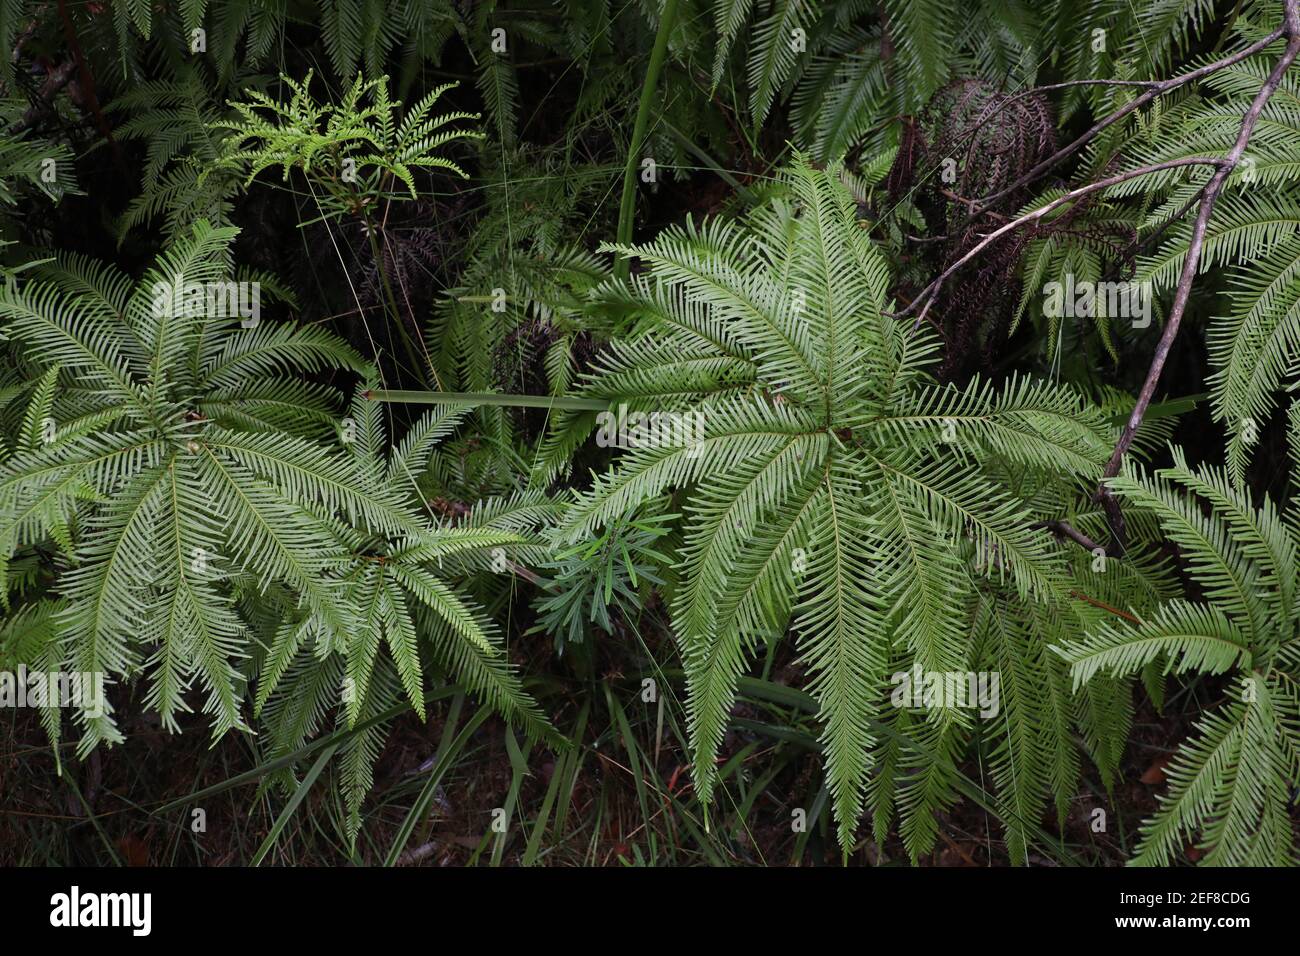 Shield ferns or umbrella ferns (Sticherus) in Sydney, NSW, Australia. Stock Photo